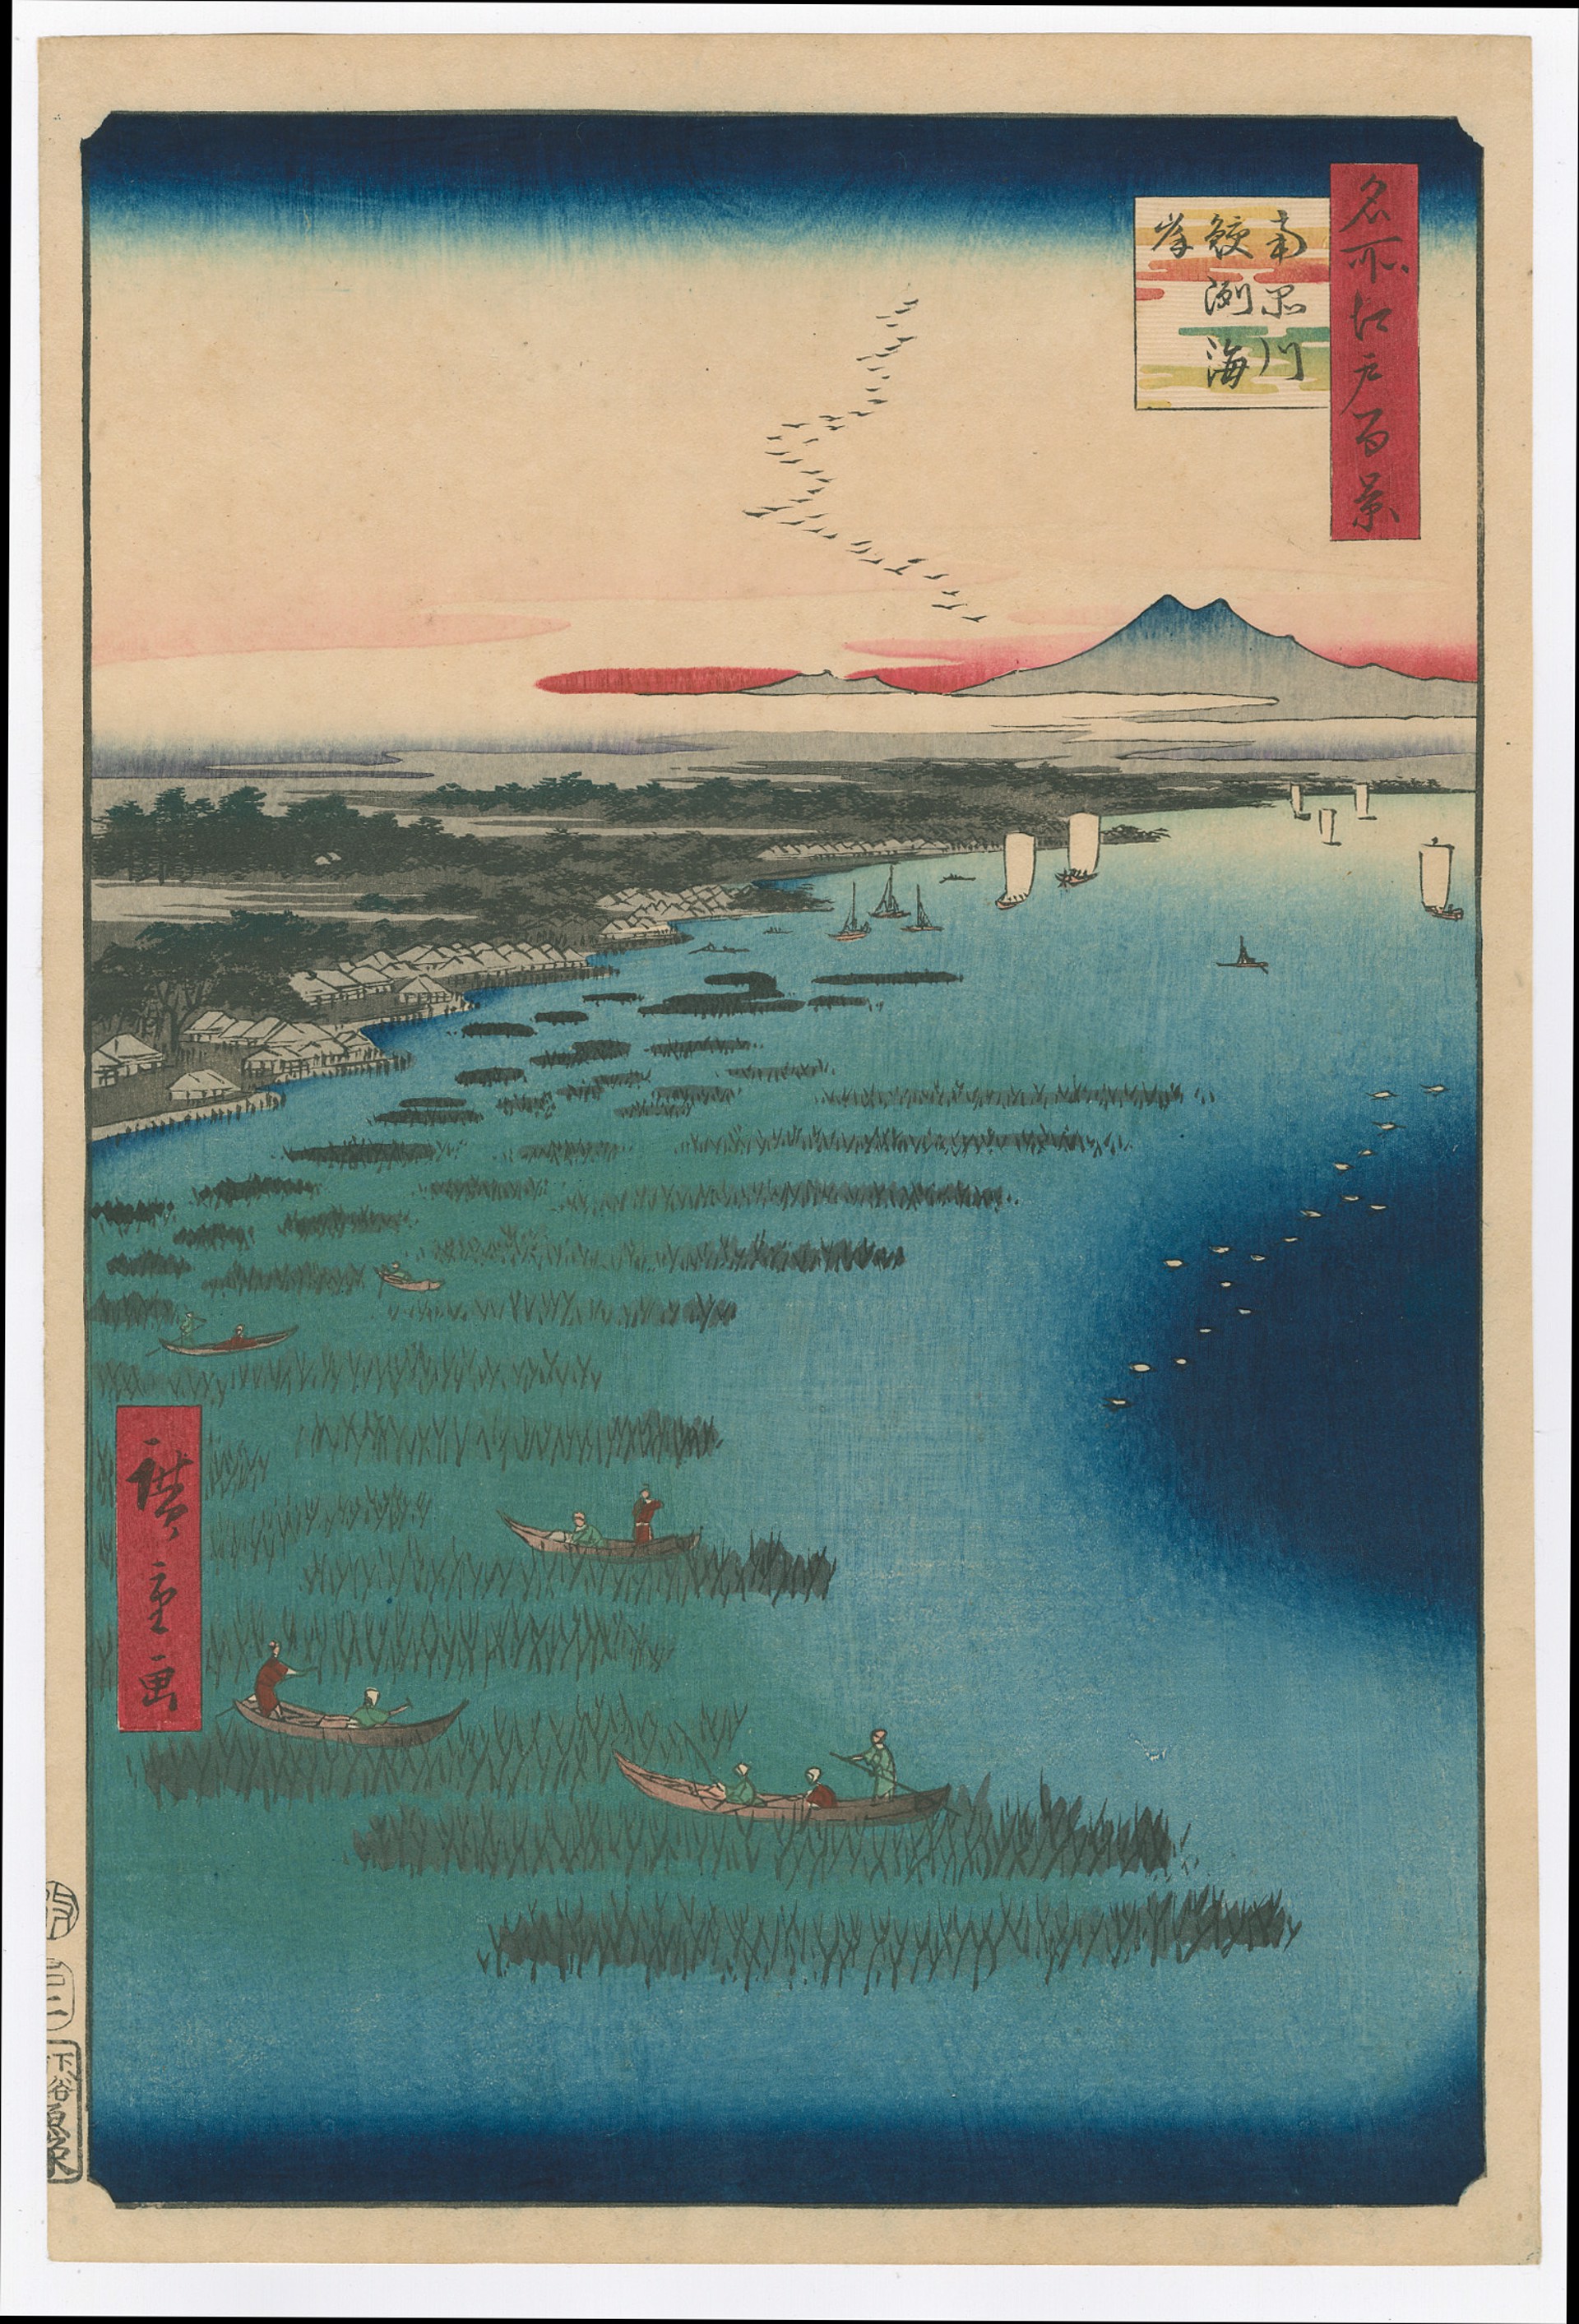 #109 Samezu Coast and South Shinagawa 100 Views of Edo by Hiroshige